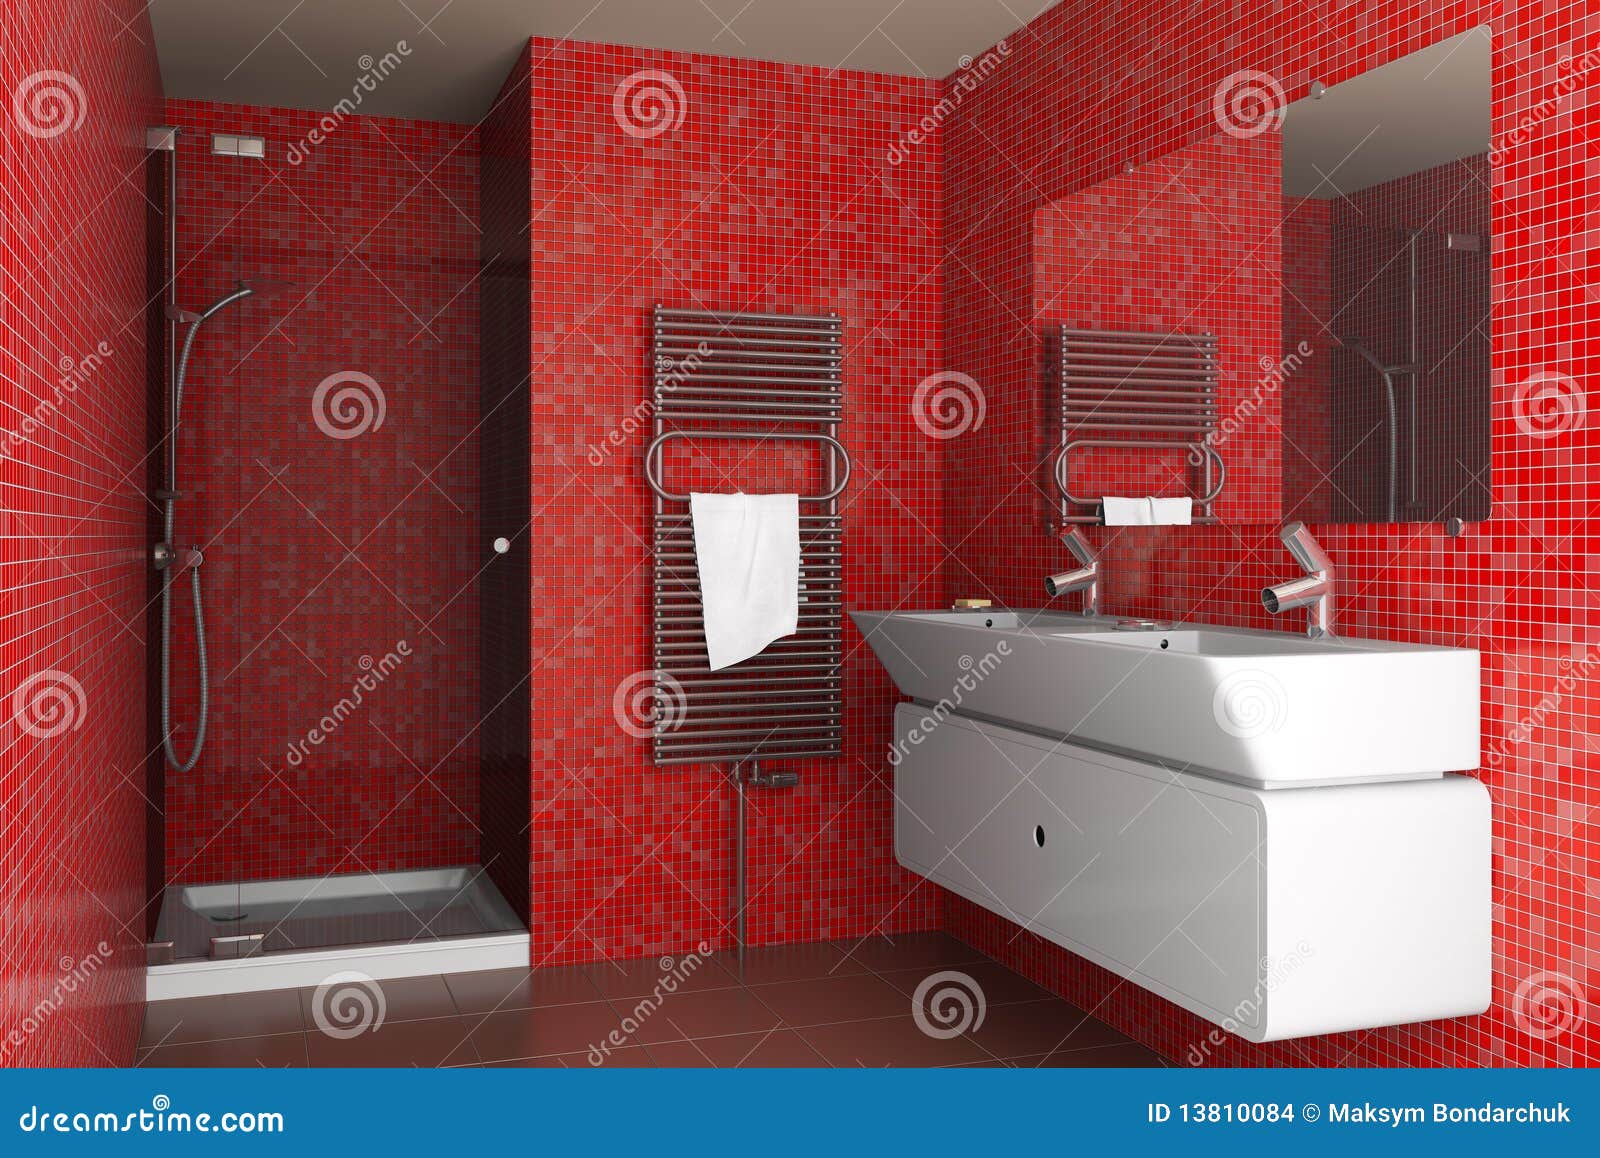 Идеи оформления ванной с использованием керамической плитки красного цвета